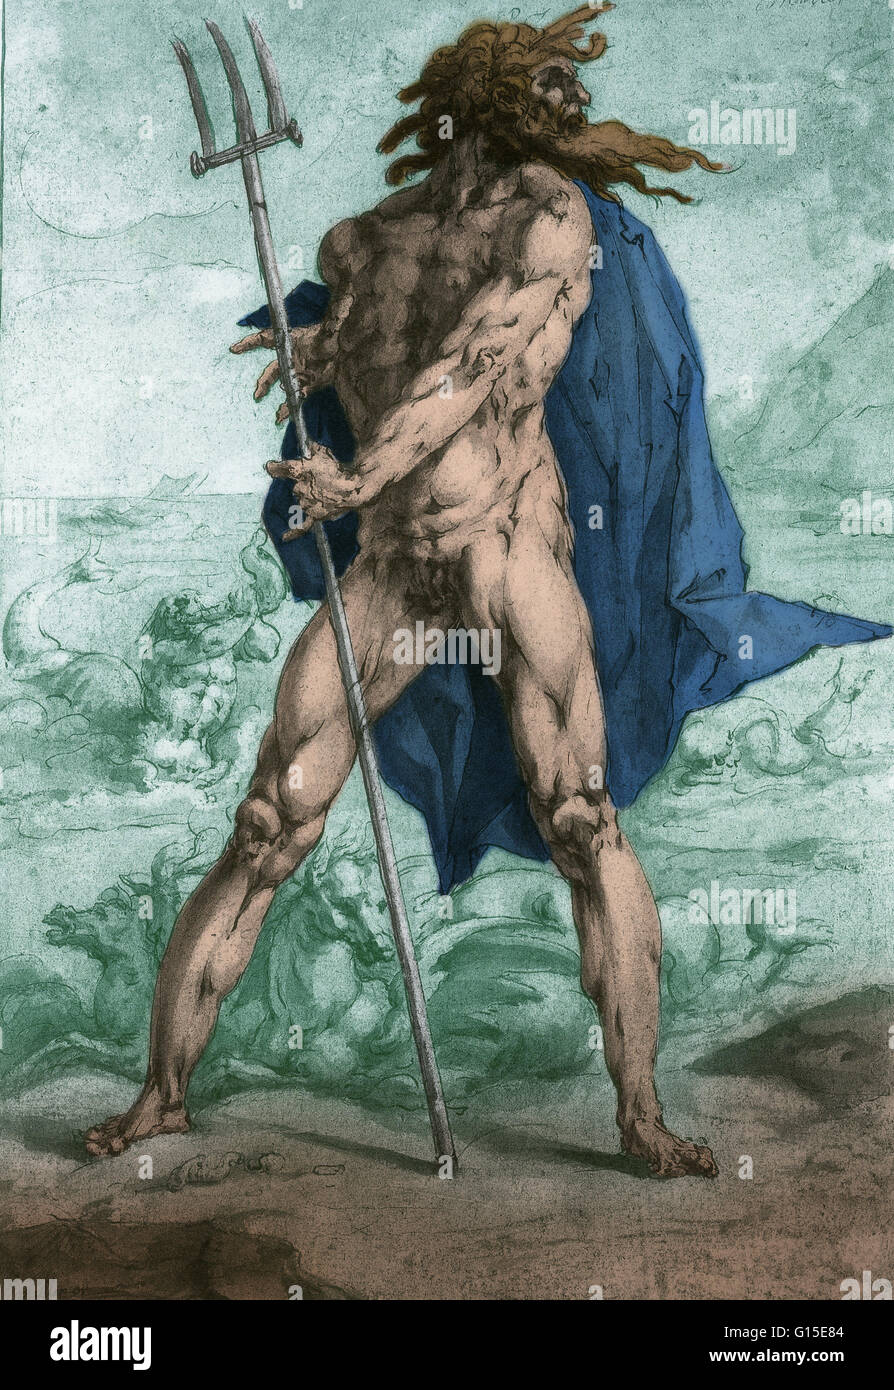 Un dibujo de Jan Harmensz Muller (1571-1628) de Neptuno con su tridente y caballos. Neptuno era el dios romano de agua dulce y el mar en la religión romana. Él es la contraparte del dios griego Poseidón. En la mitología grecorromana, él era el hermano o Foto de stock